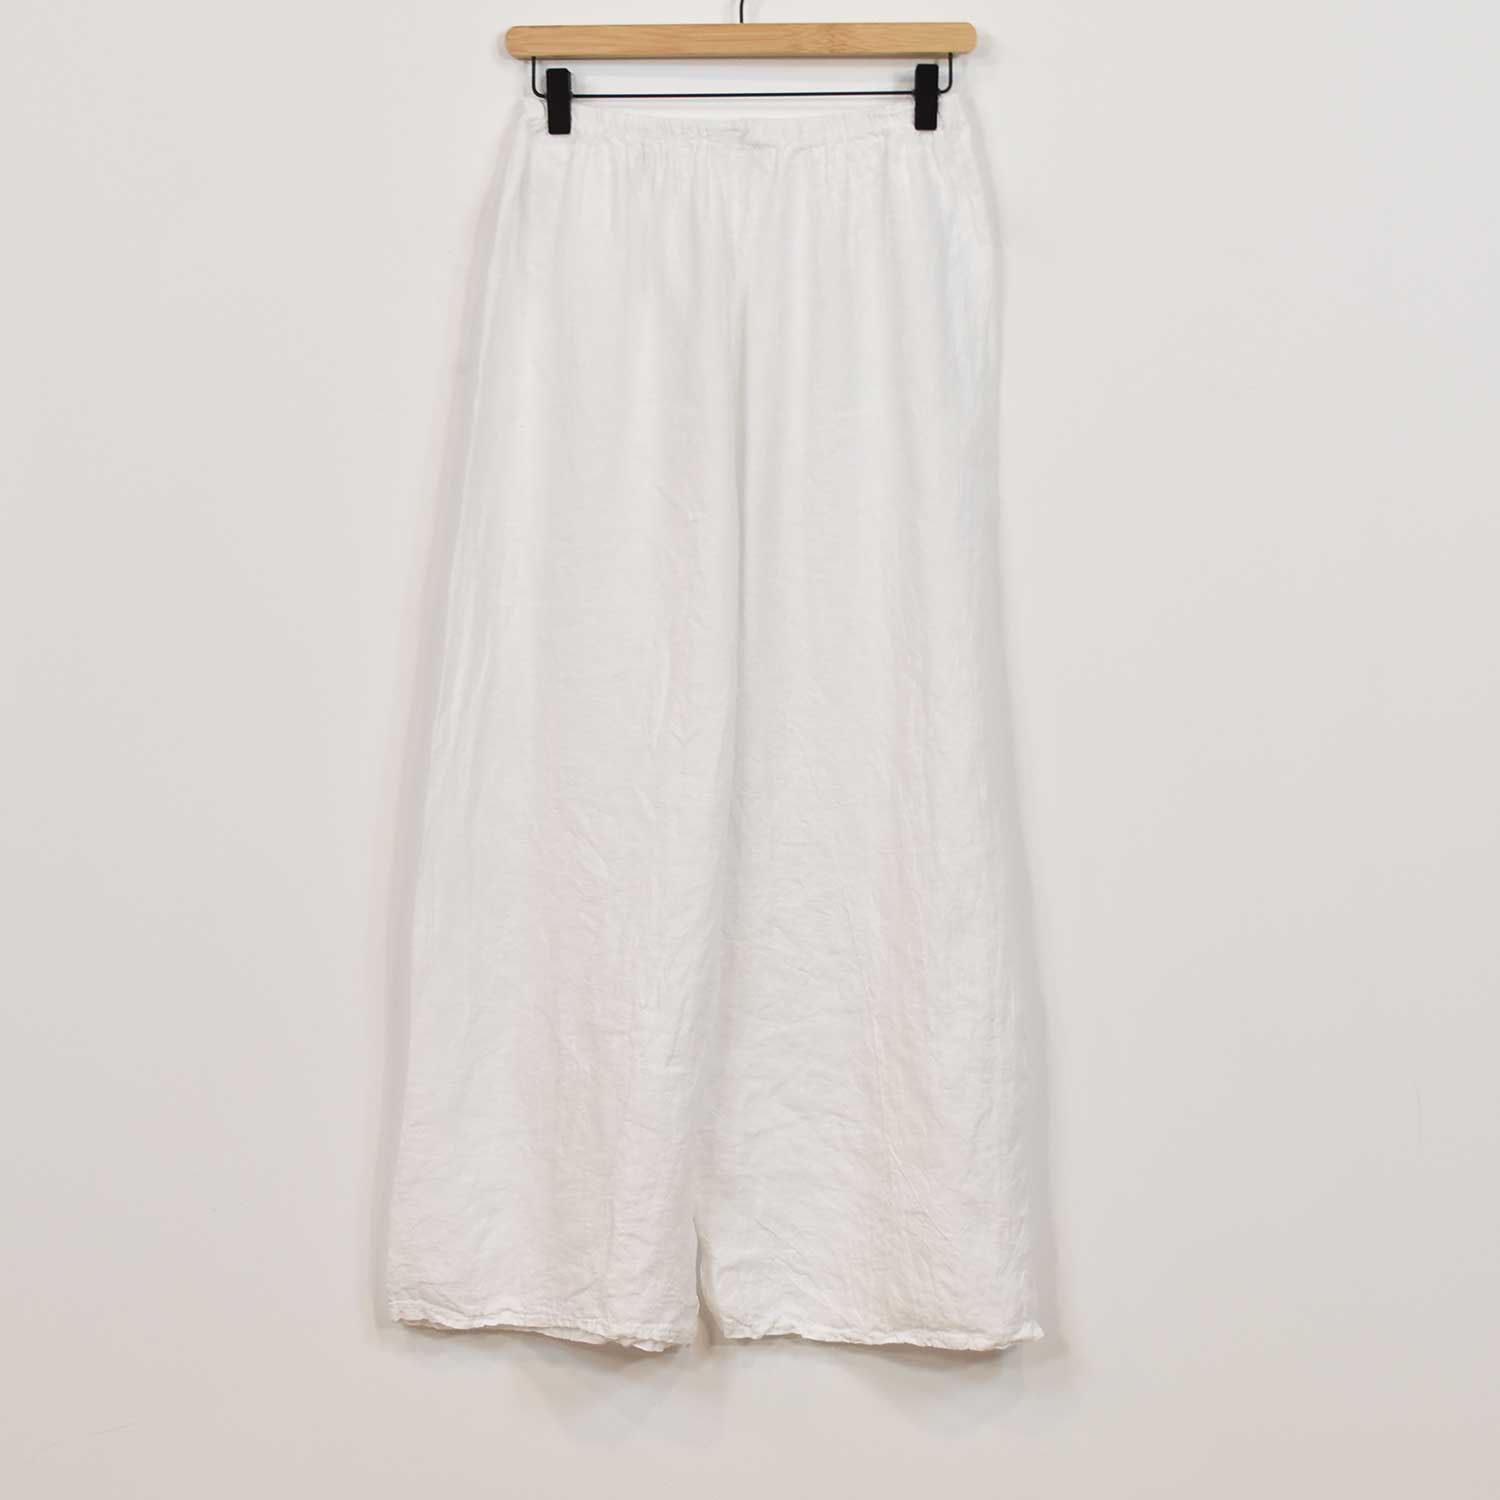 Pantalon droit en lin blanc